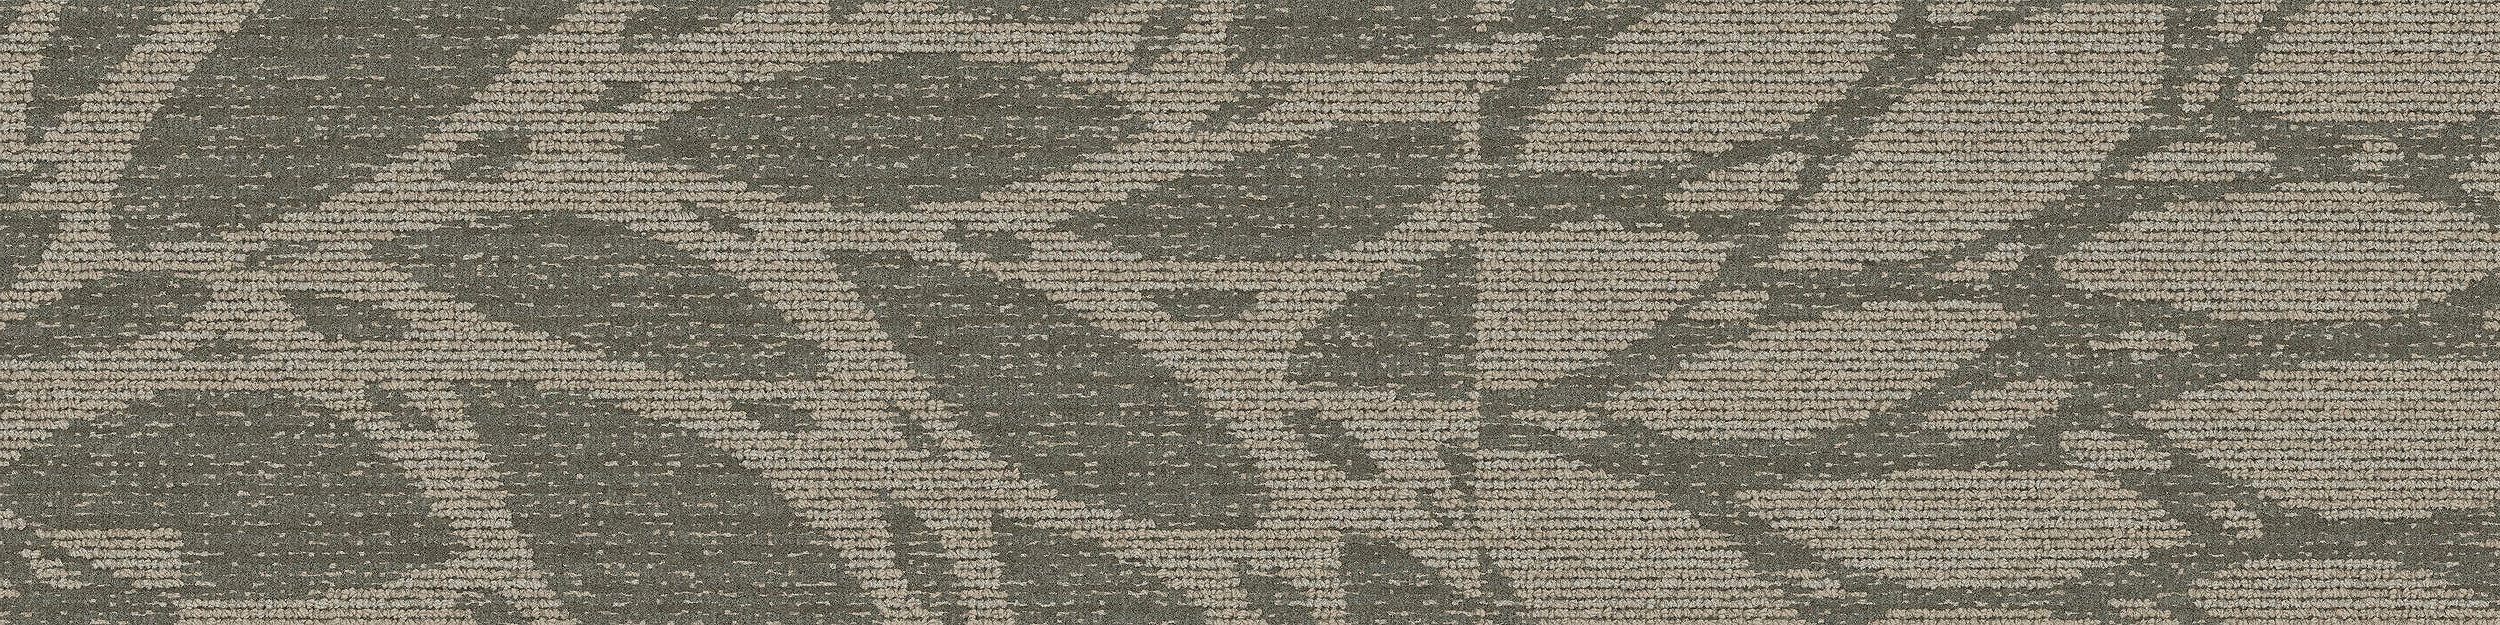 GN157 Carpet Tile In Pewter image number 3